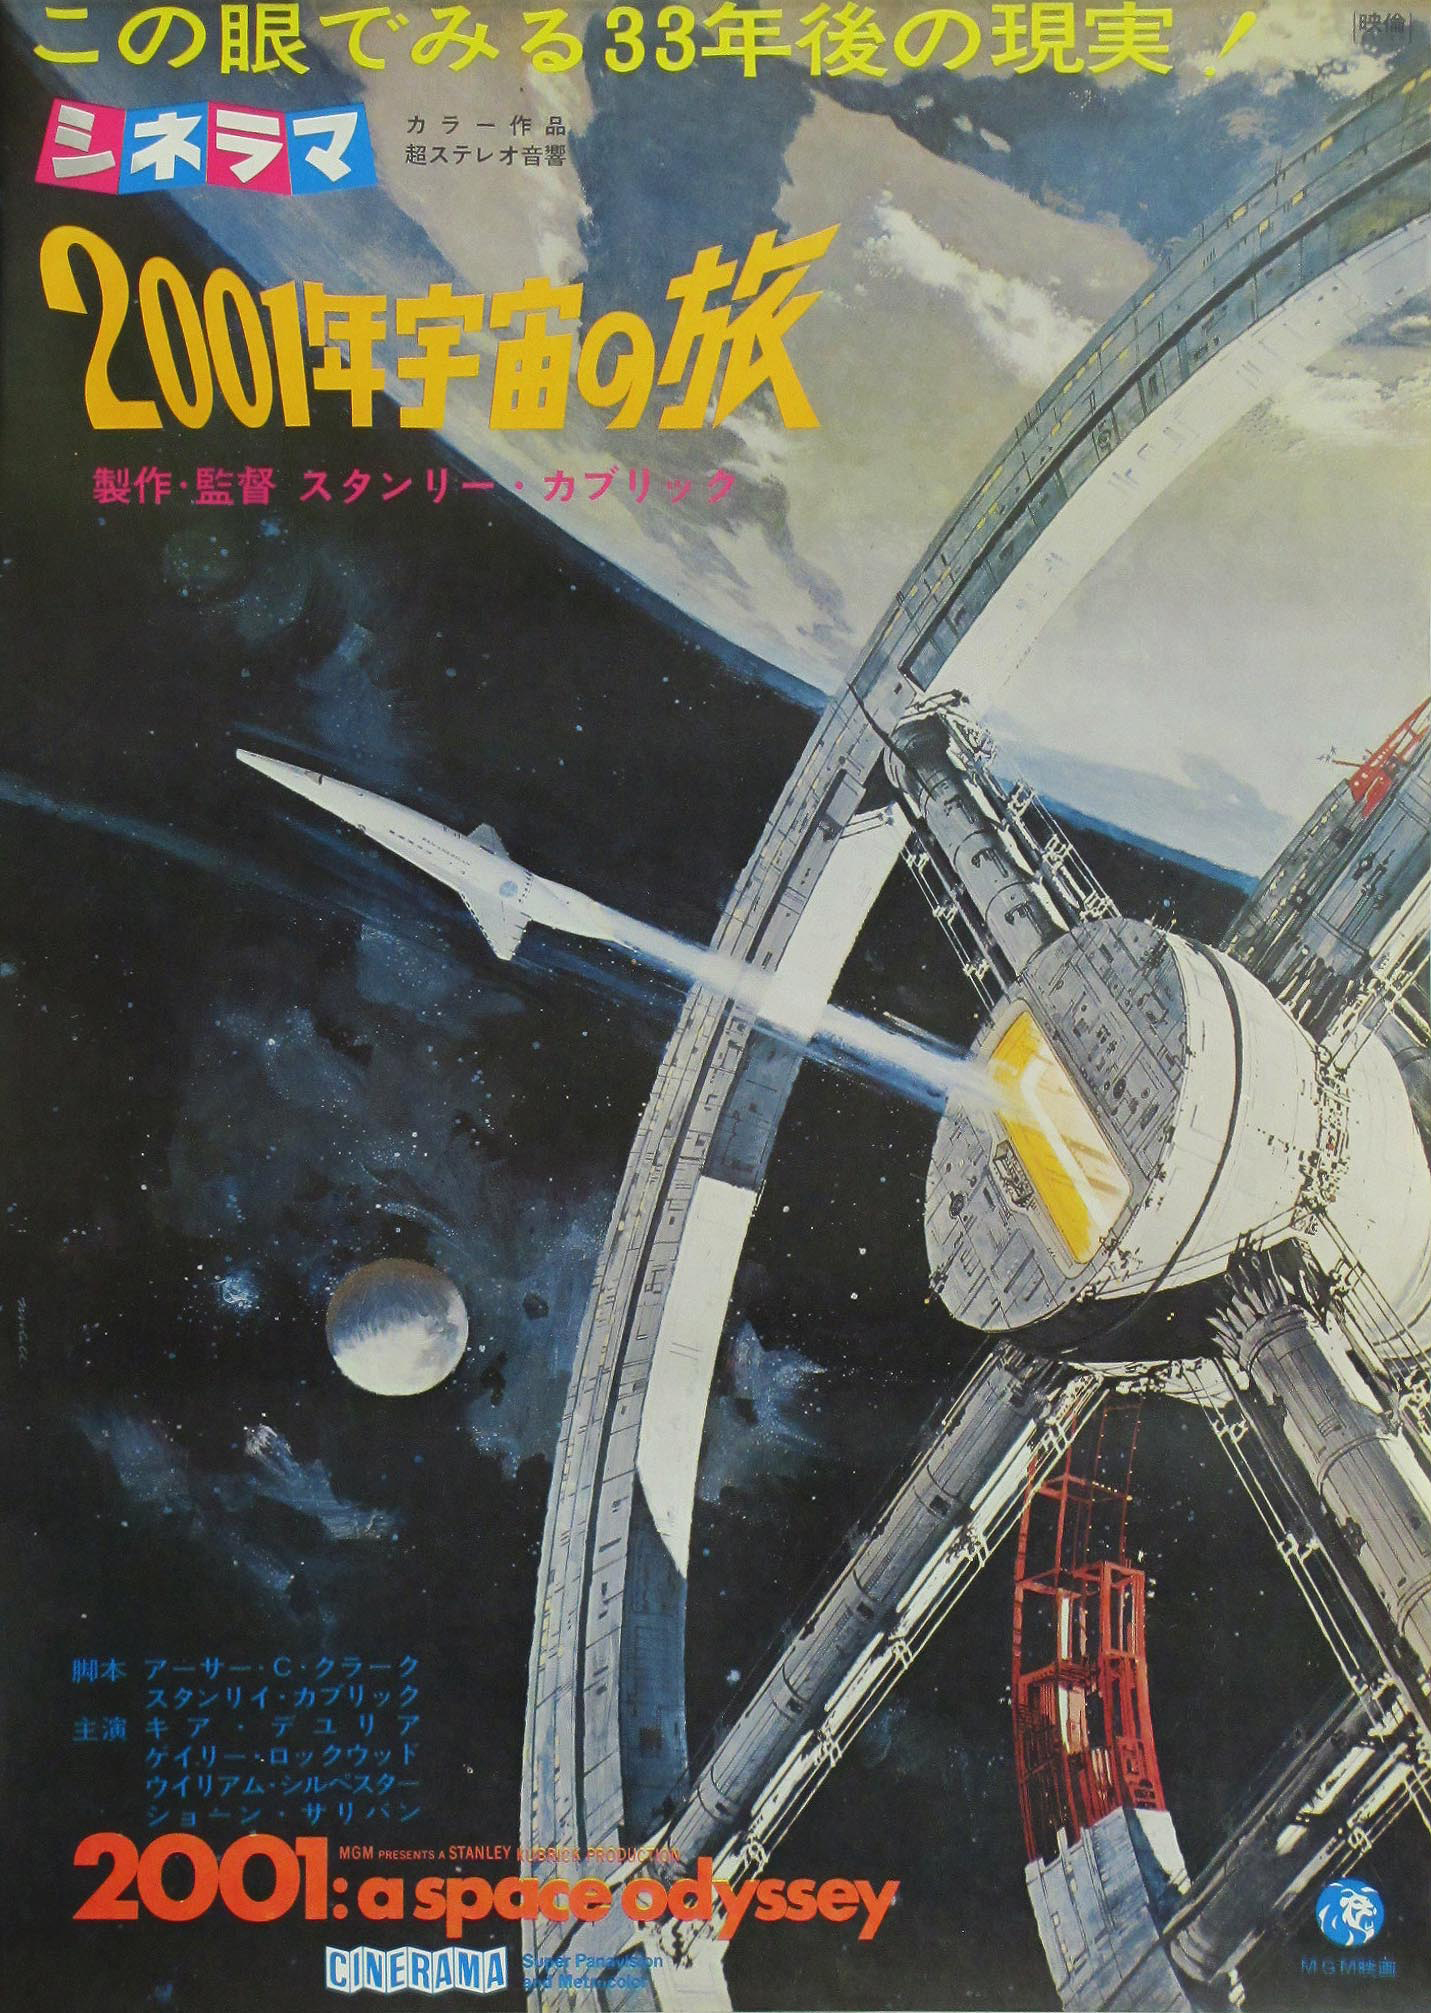 2001 a space odyssey movie